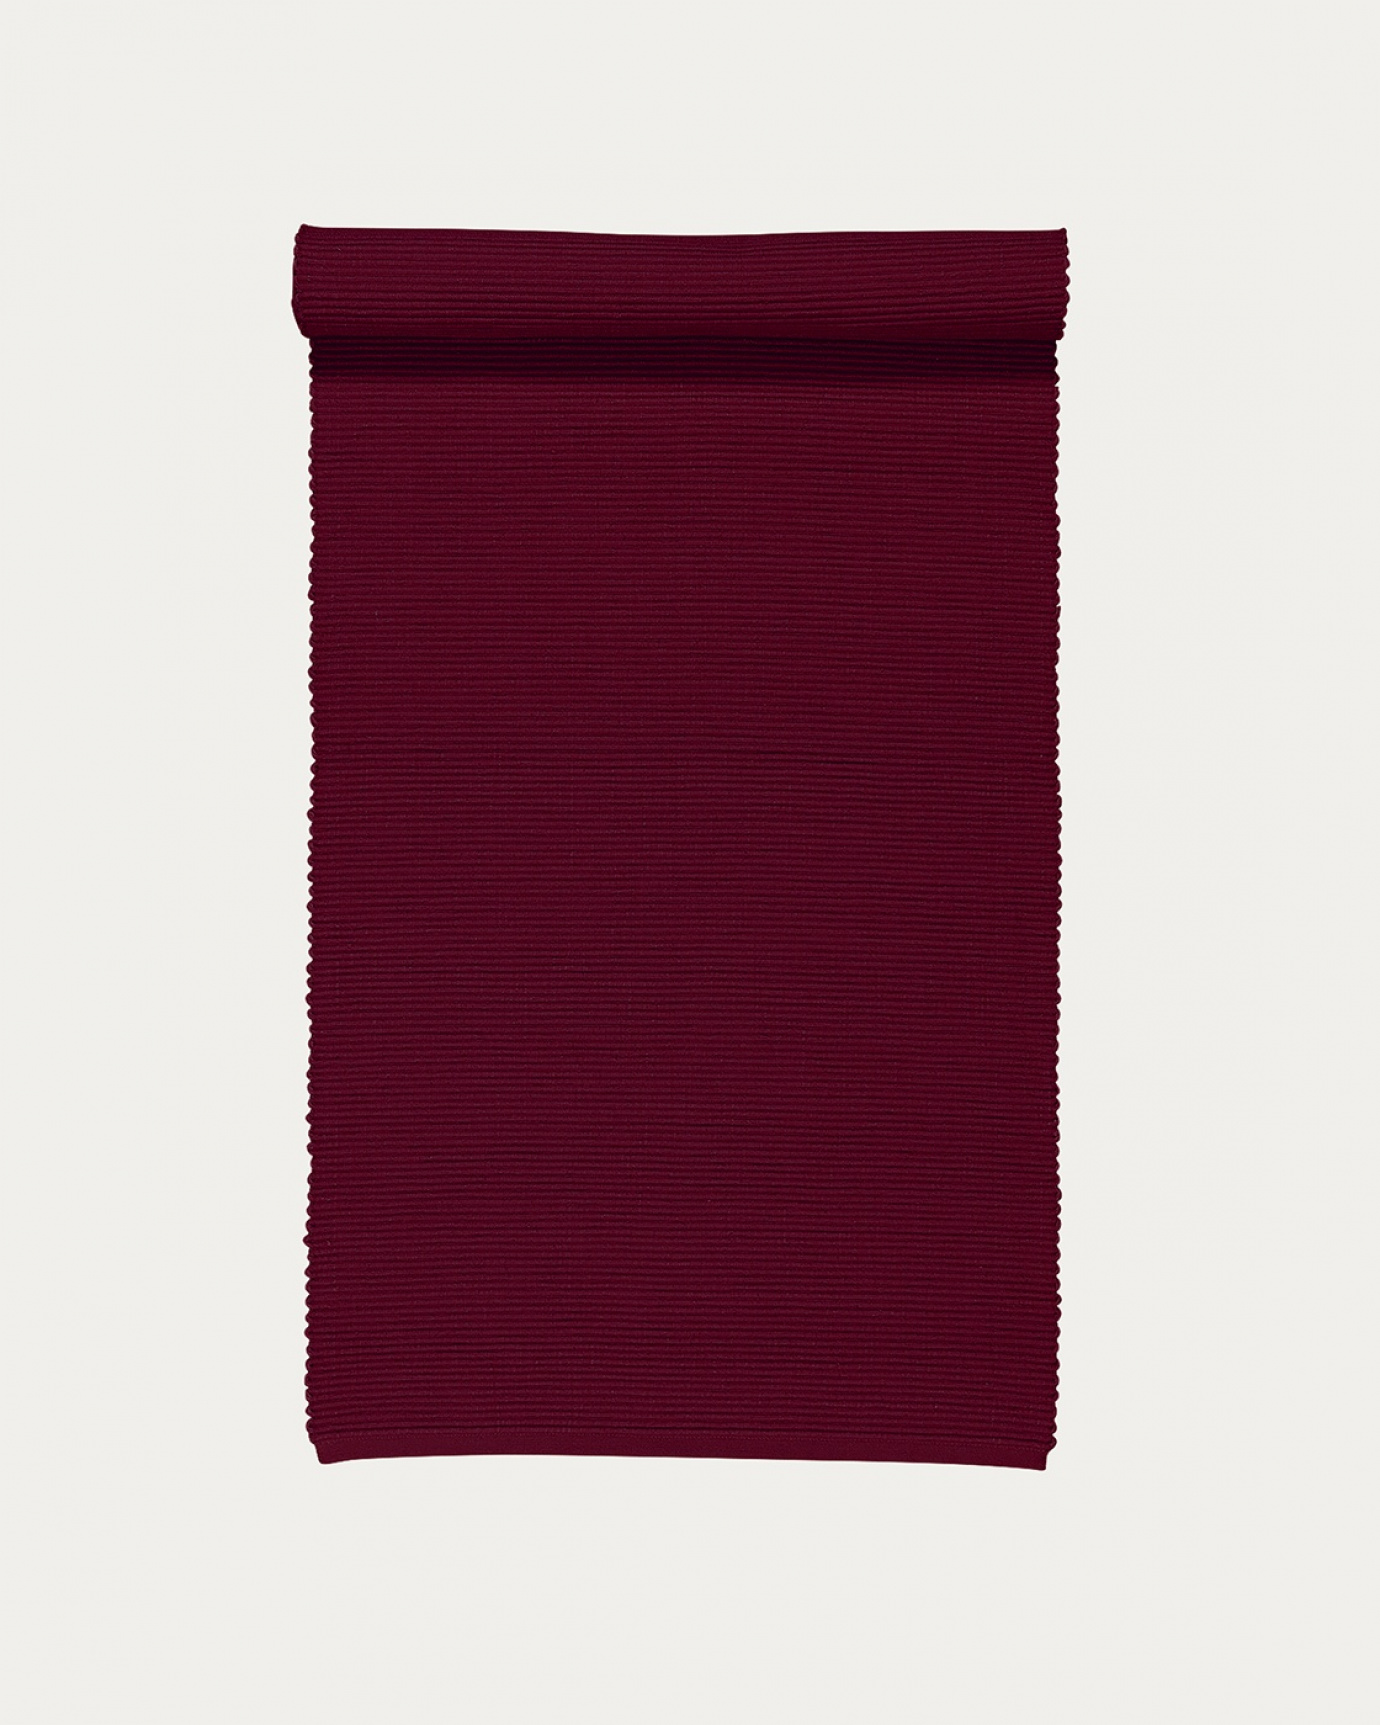 Immagine prodotto rosso borgogna runner UNI in morbido cotone a costine di qualità di LINUM DESIGN. Dimensioni 45x150 cm.